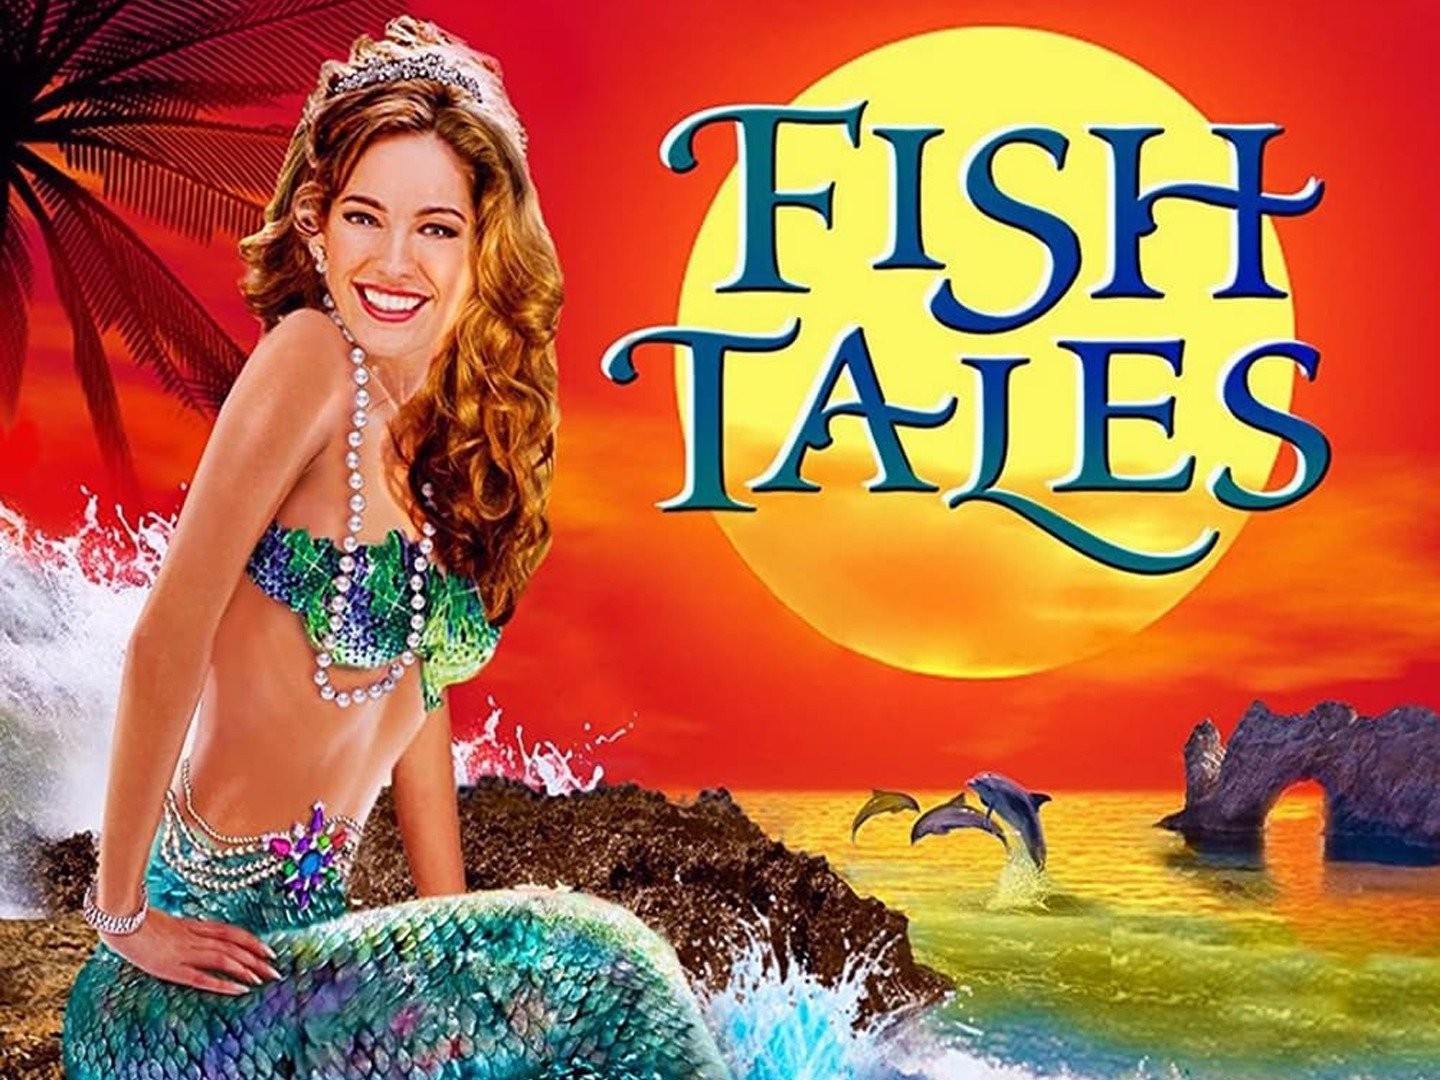 Fishtales  Rotten Tomatoes